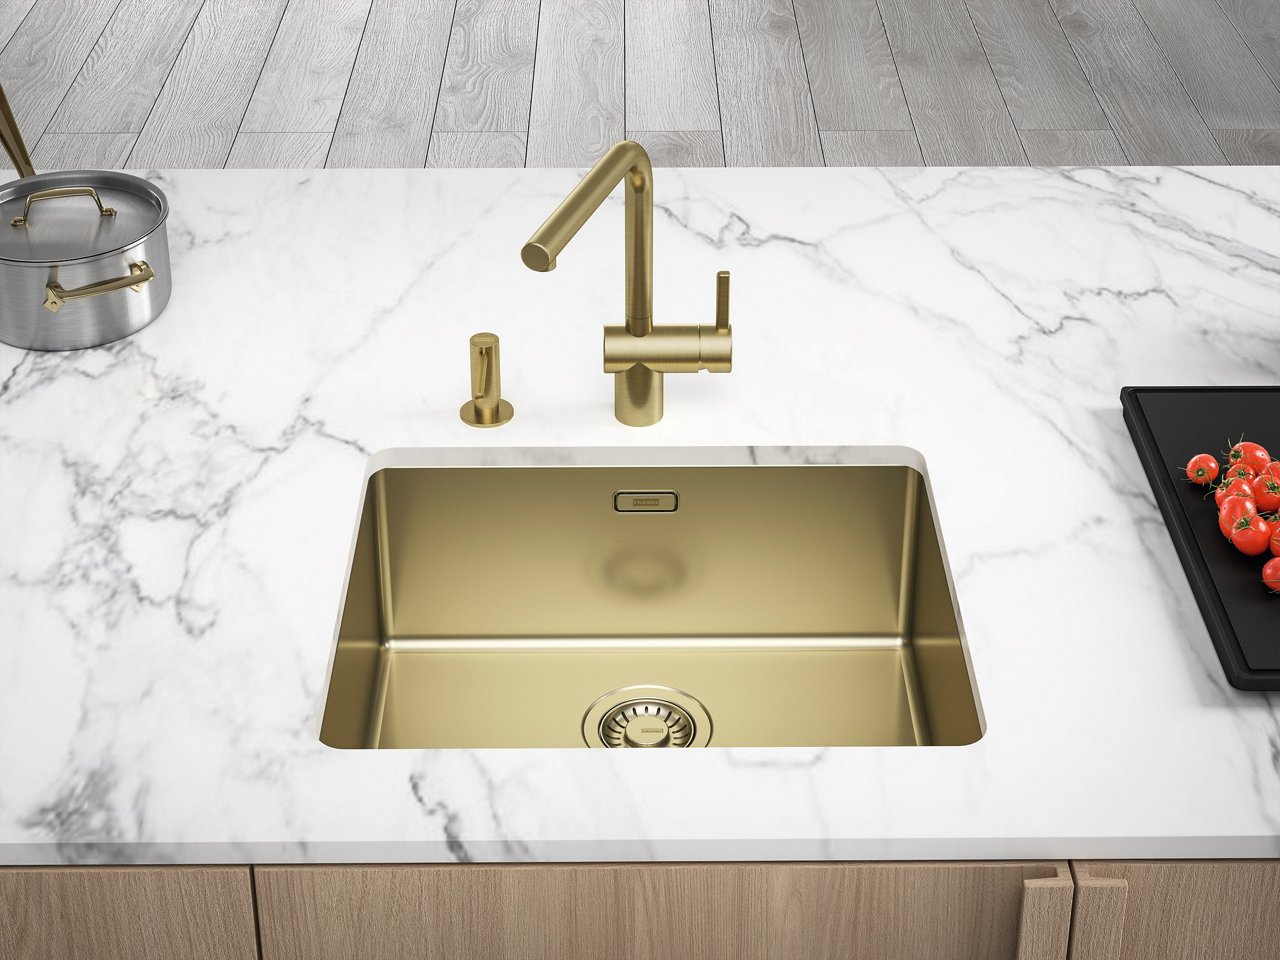 Franke gold sink, gold tap and gold soap dispenser